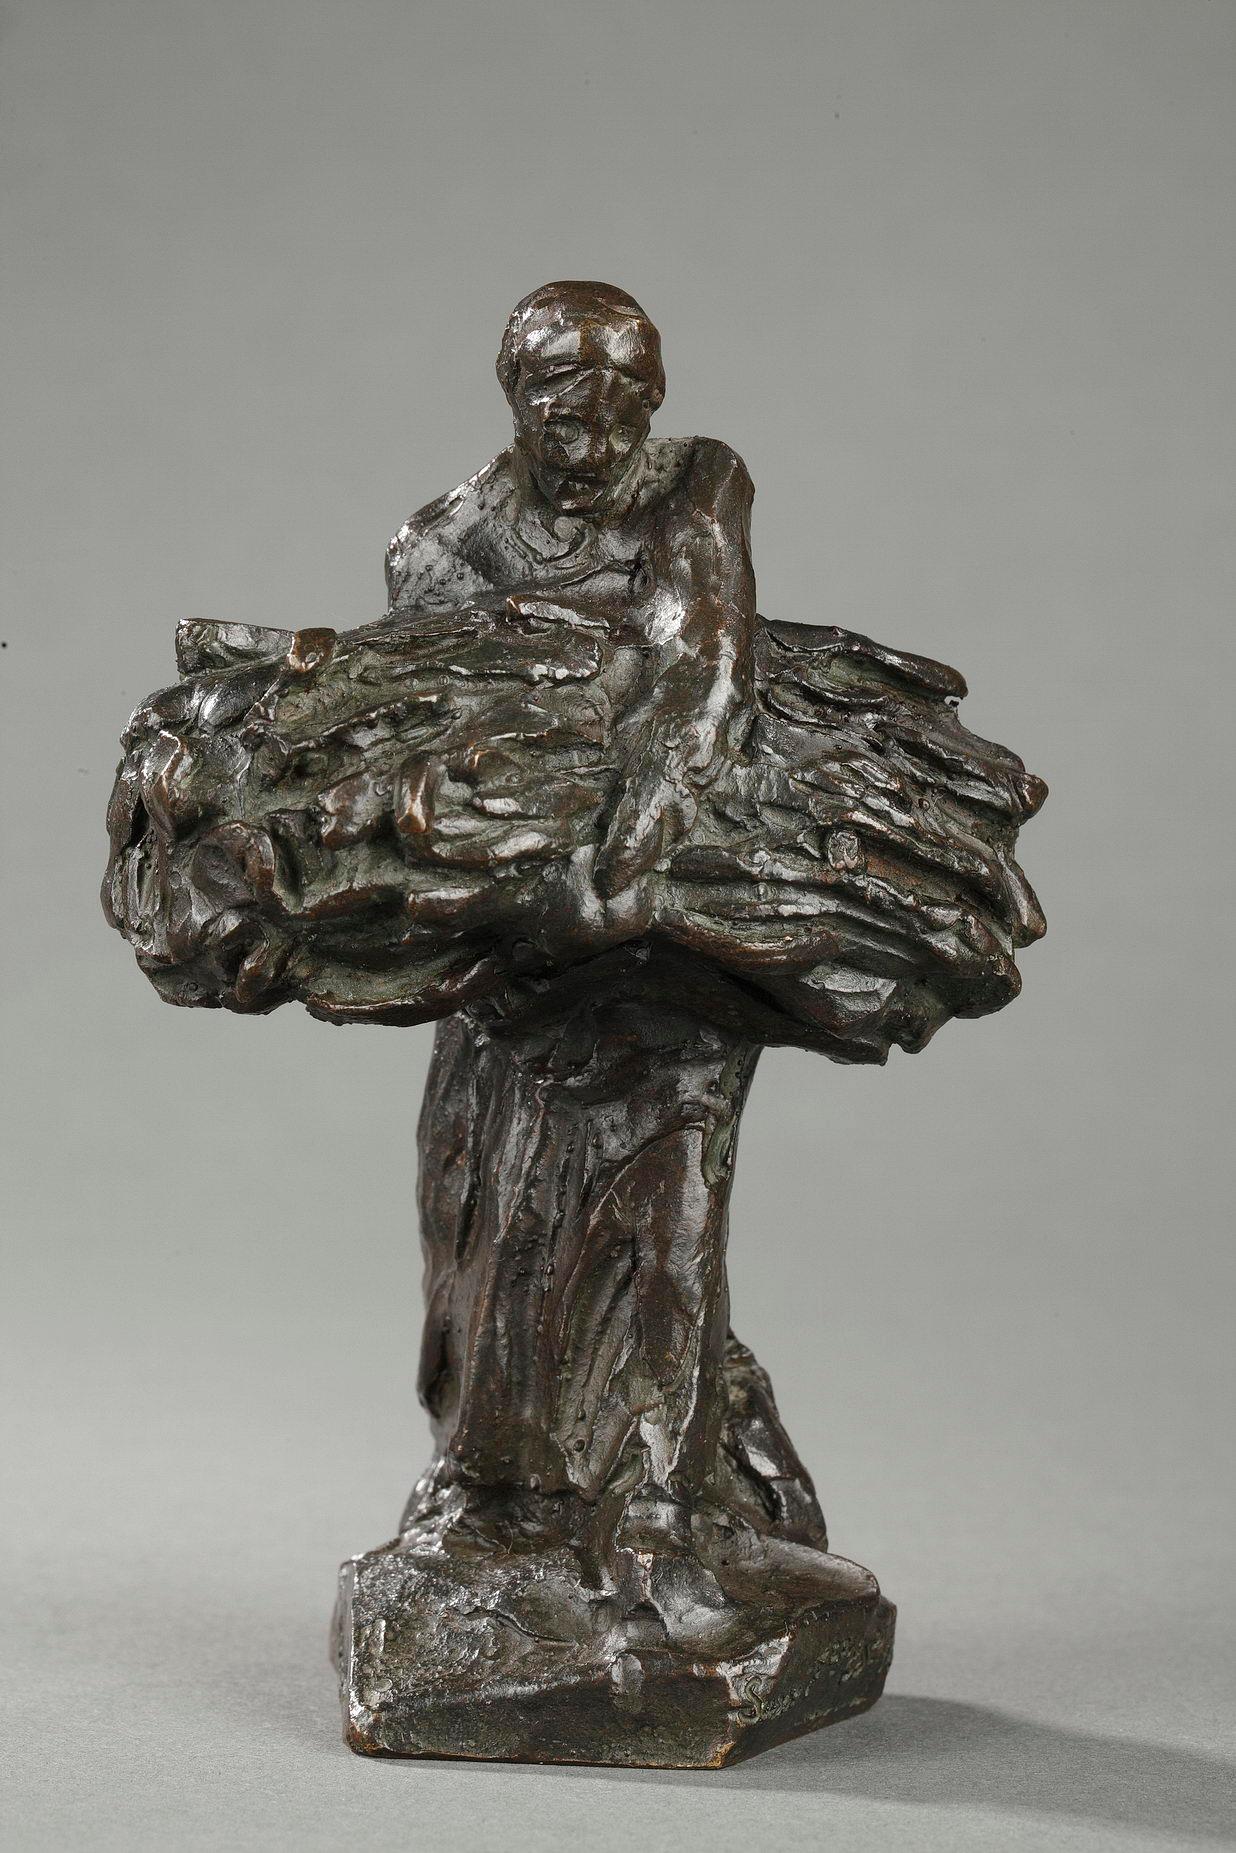 Träger von Weizengarben – Sculpture von Aimé-Jules Dalou